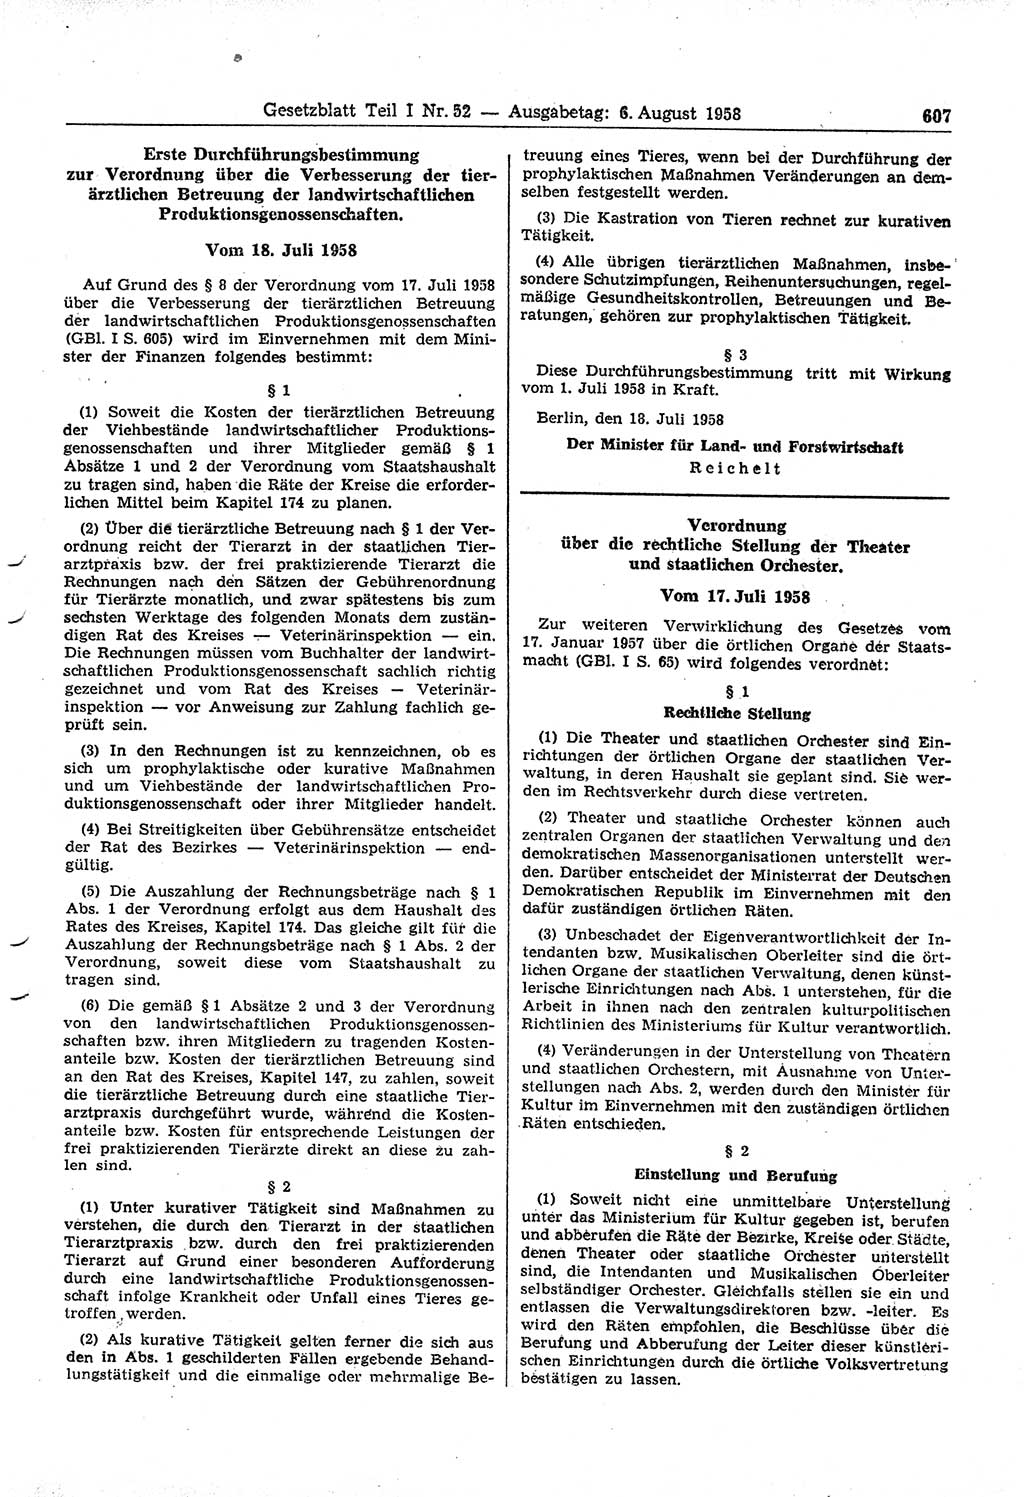 Gesetzblatt (GBl.) der Deutschen Demokratischen Republik (DDR) Teil Ⅰ 1958, Seite 607 (GBl. DDR Ⅰ 1958, S. 607)